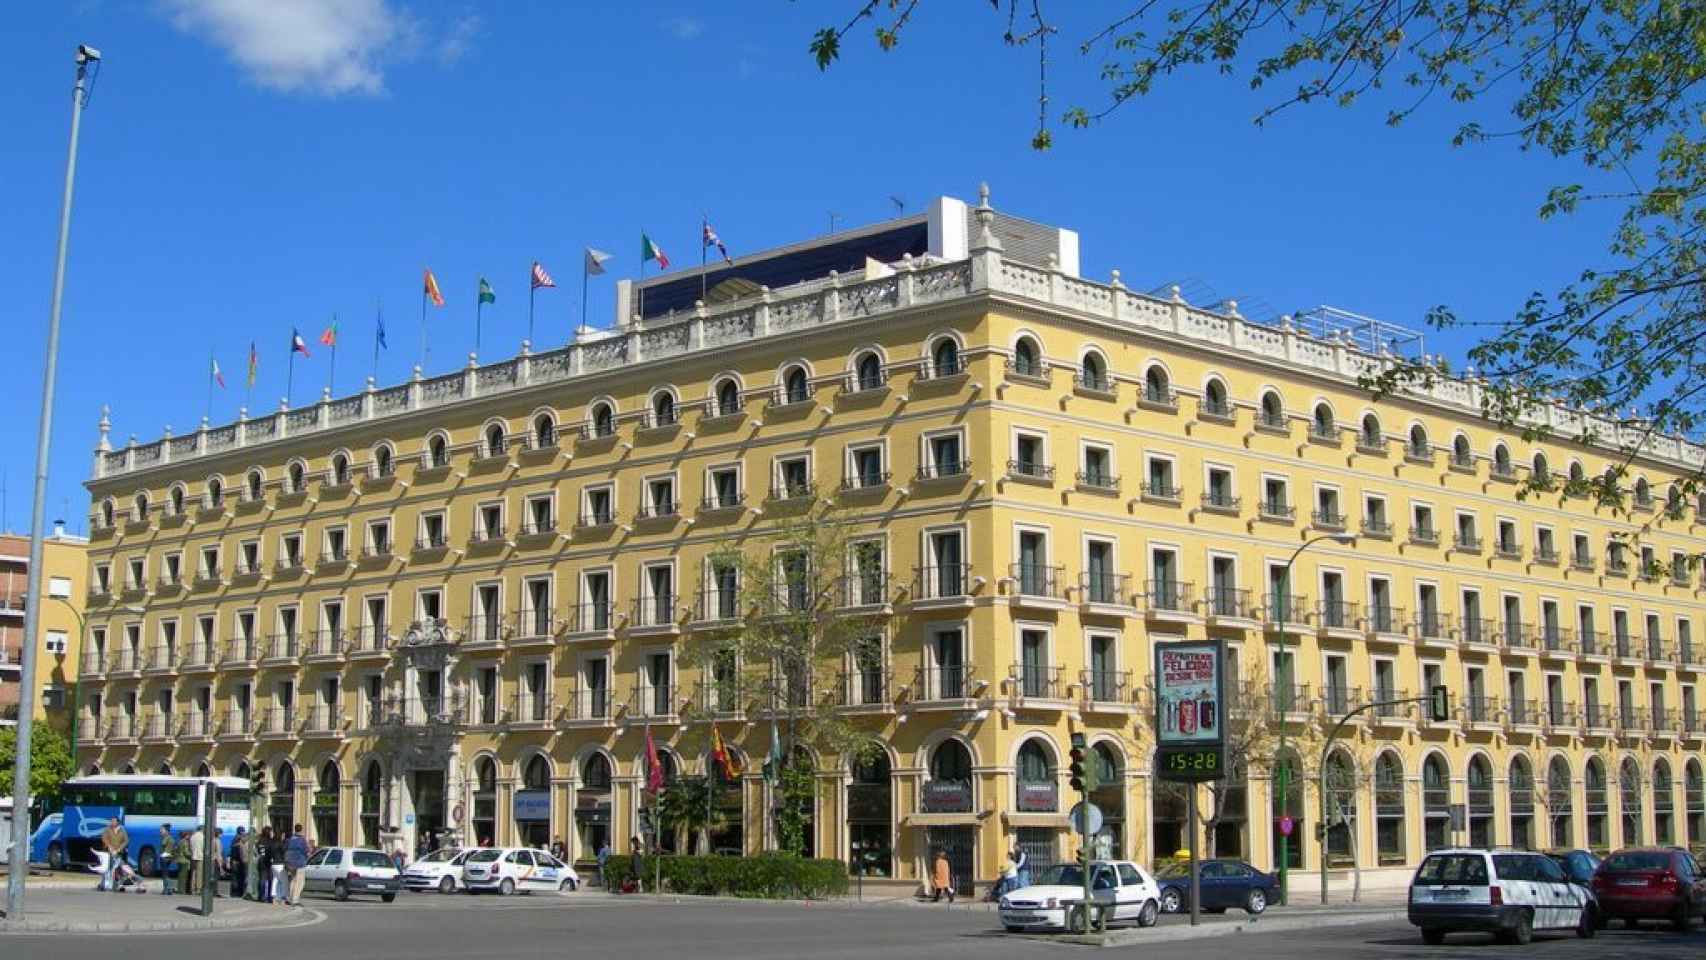 Imagen del hotel Macarena de Sevilla, del que Nyesa Valores tuvo que desprenderse / CG